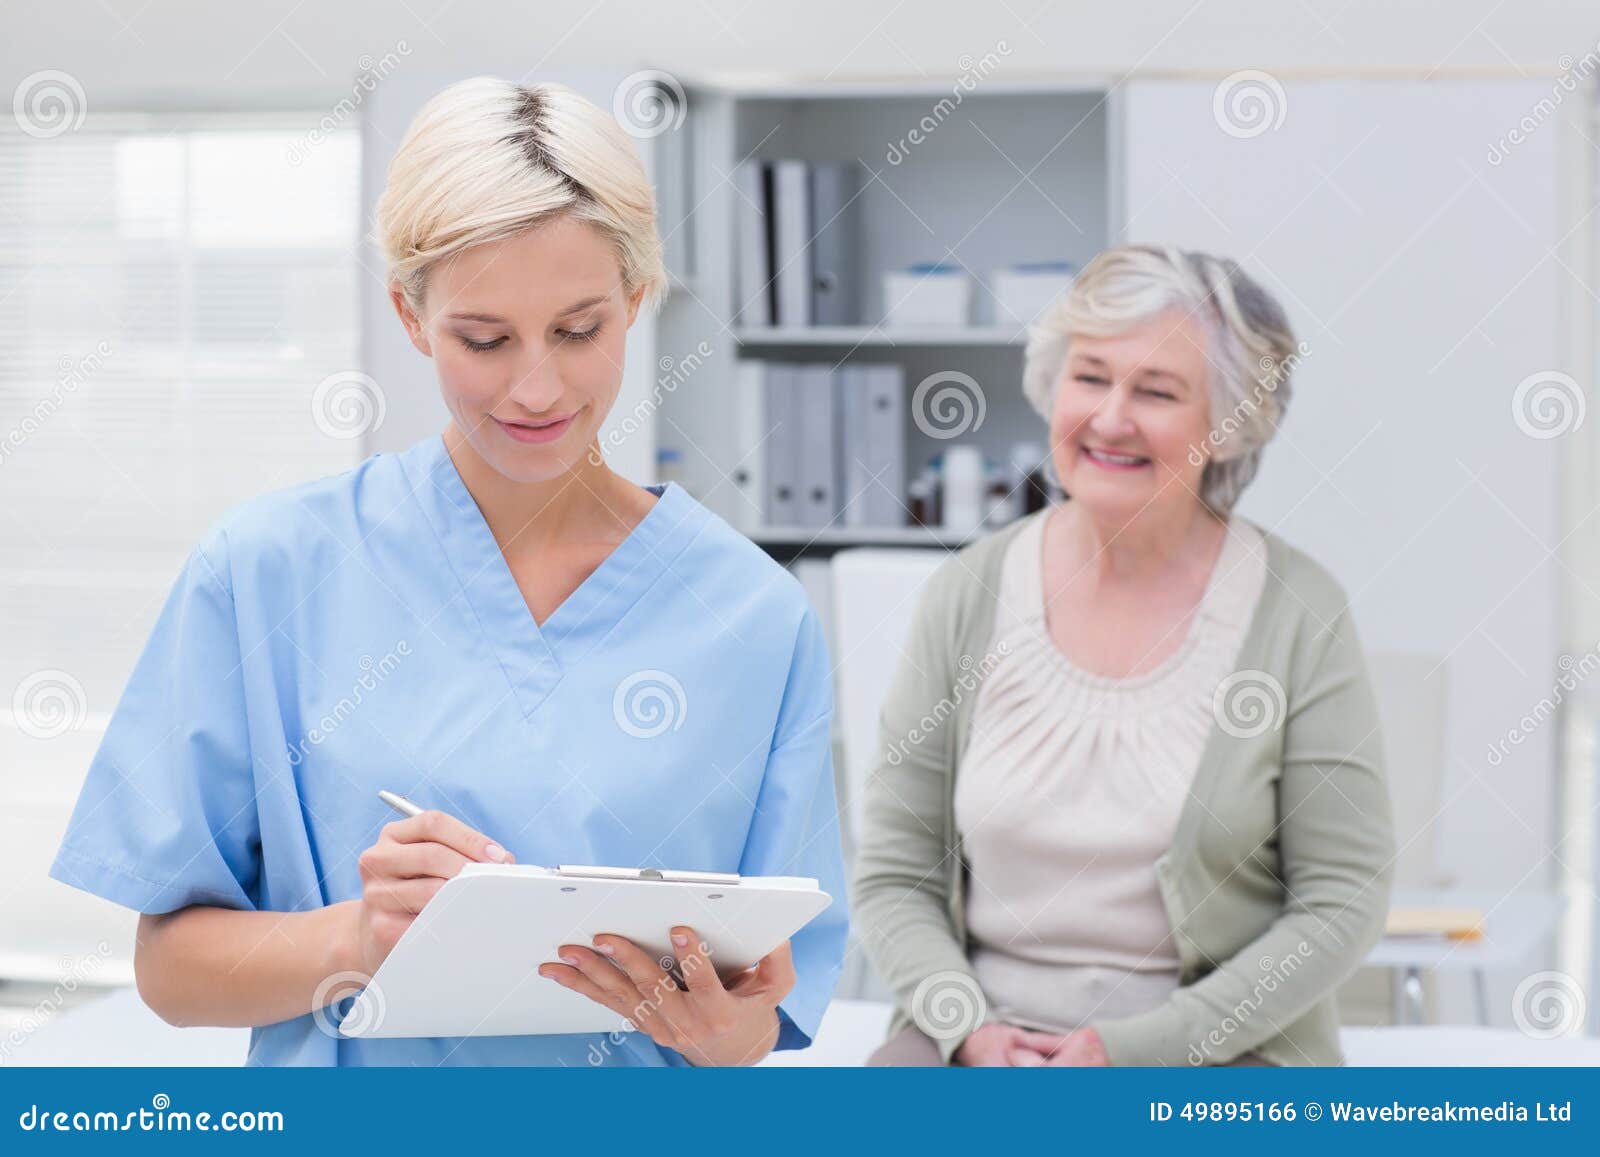 Медсестра ставит диагноз. Медсестра сидит с пациентом. Медсестры в Финляндии. Сидят в клинике. Писать медсестра с больным.